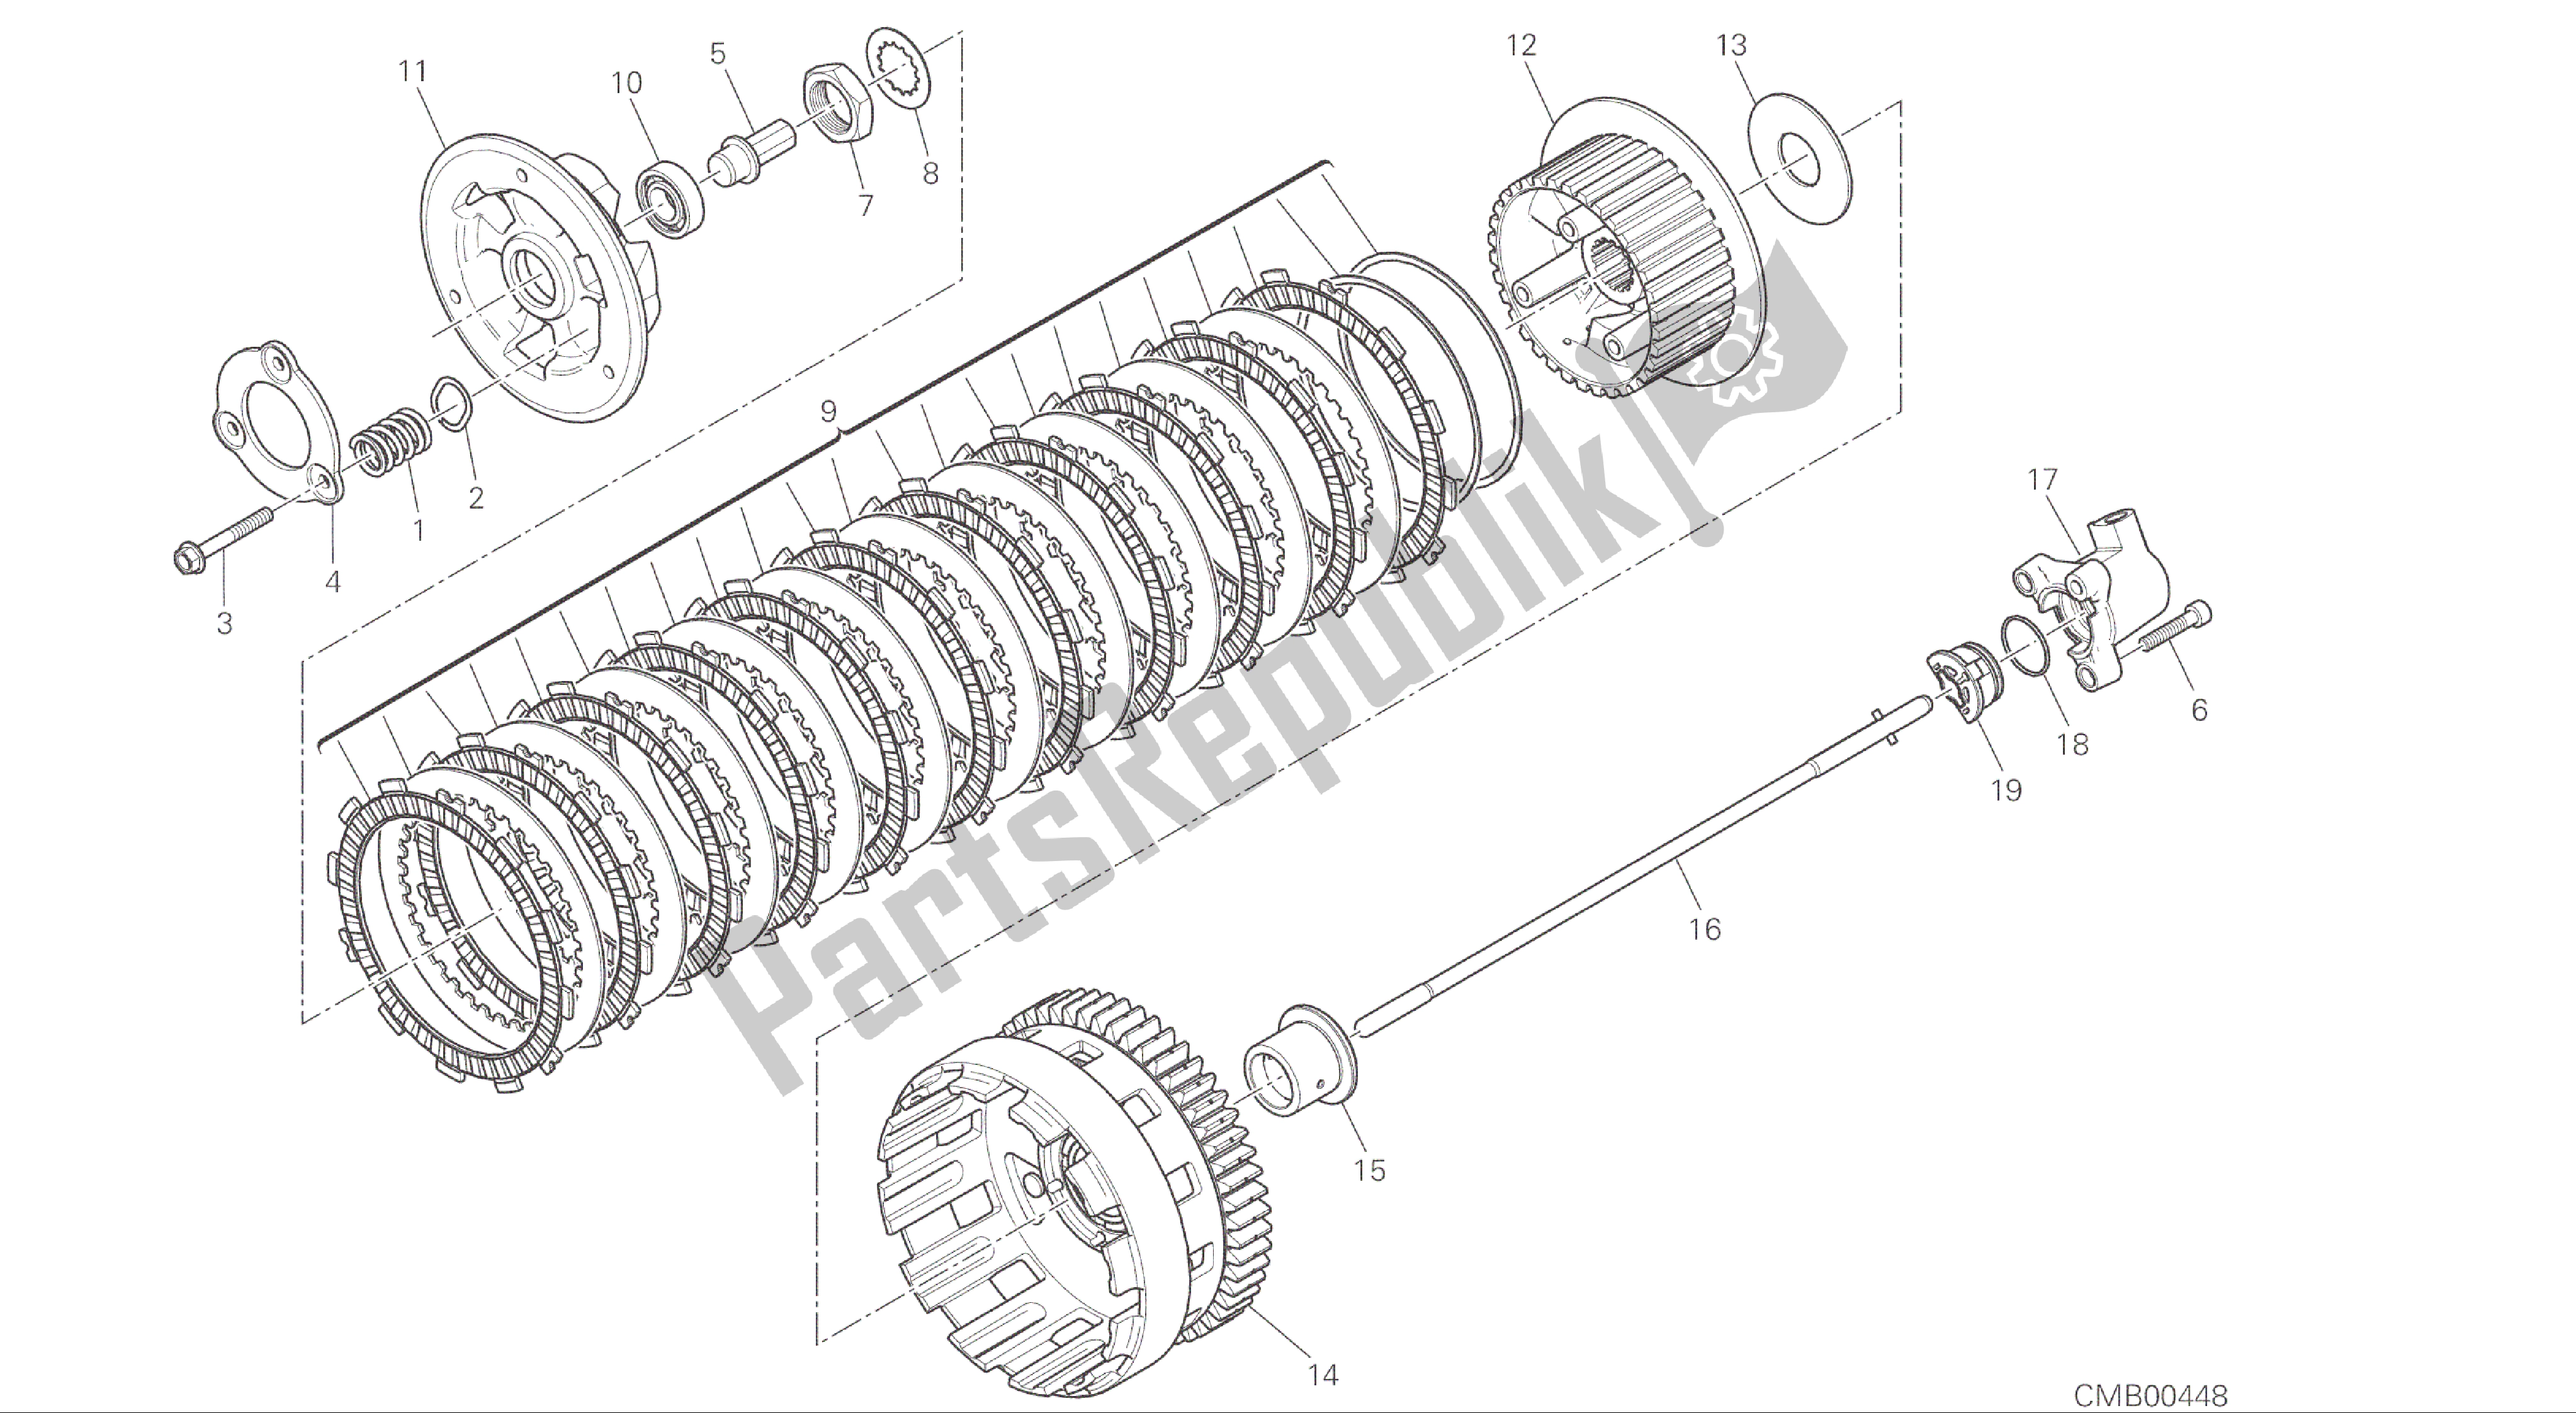 Alle onderdelen voor de Tekening 004 - Koppeling [mod: 1299; Xst: Aus, Eur, Fra, Jap, Twn] Groepsmotor van de Ducati Panigale ABS 1299 2016